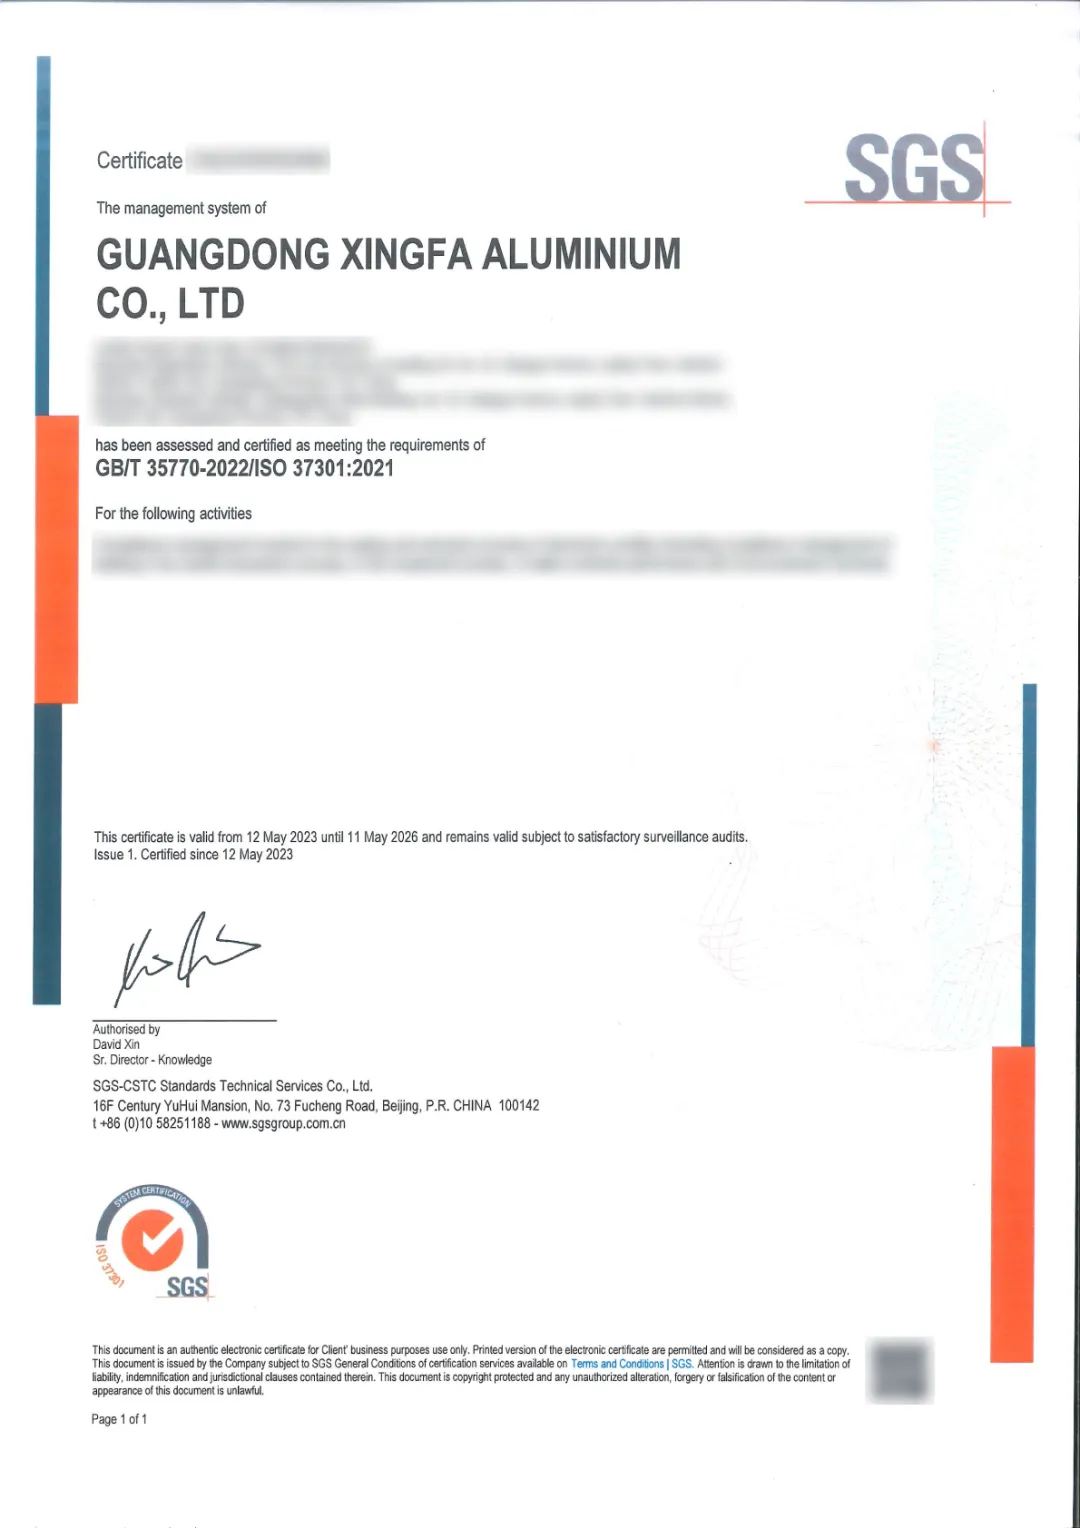 【喜讯】行业首家 | 兴发铝业获得SGS合规管理体系认证 